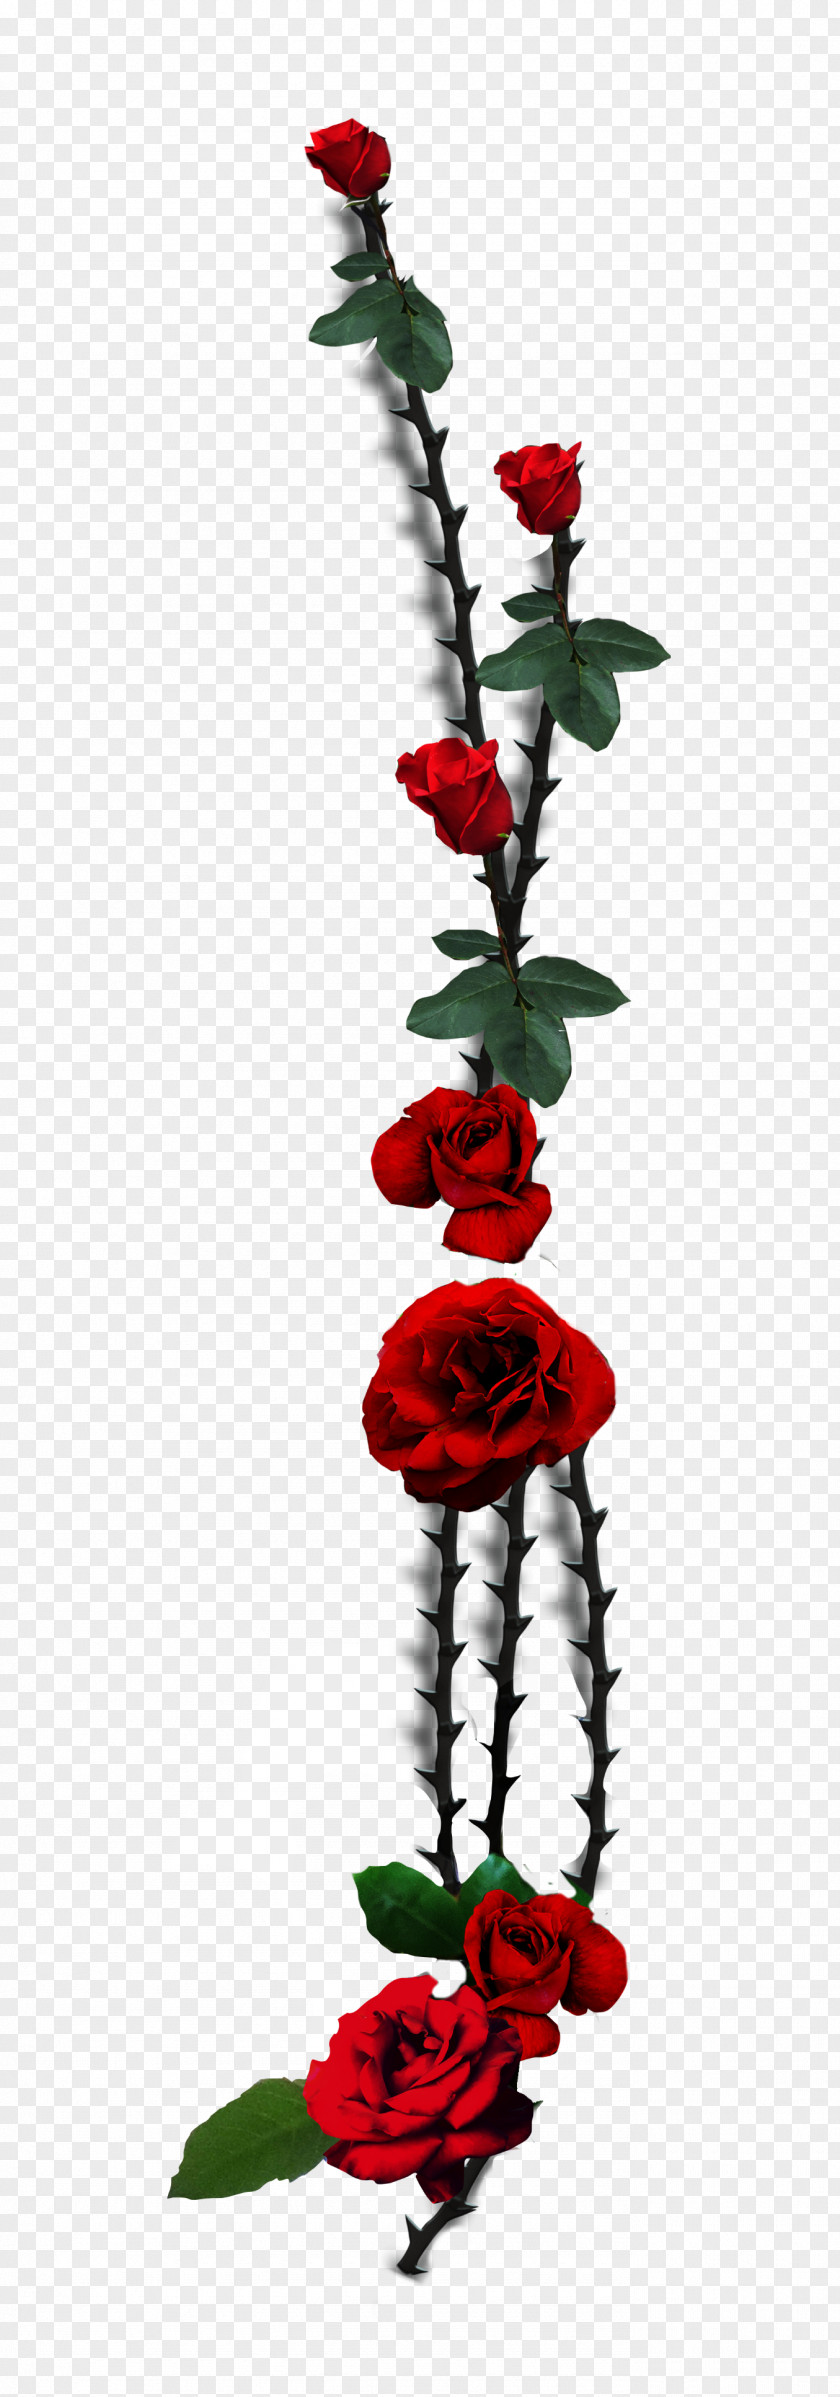 Rose Garden Roses Thorns, Spines, And Prickles Flower Floral Design PNG